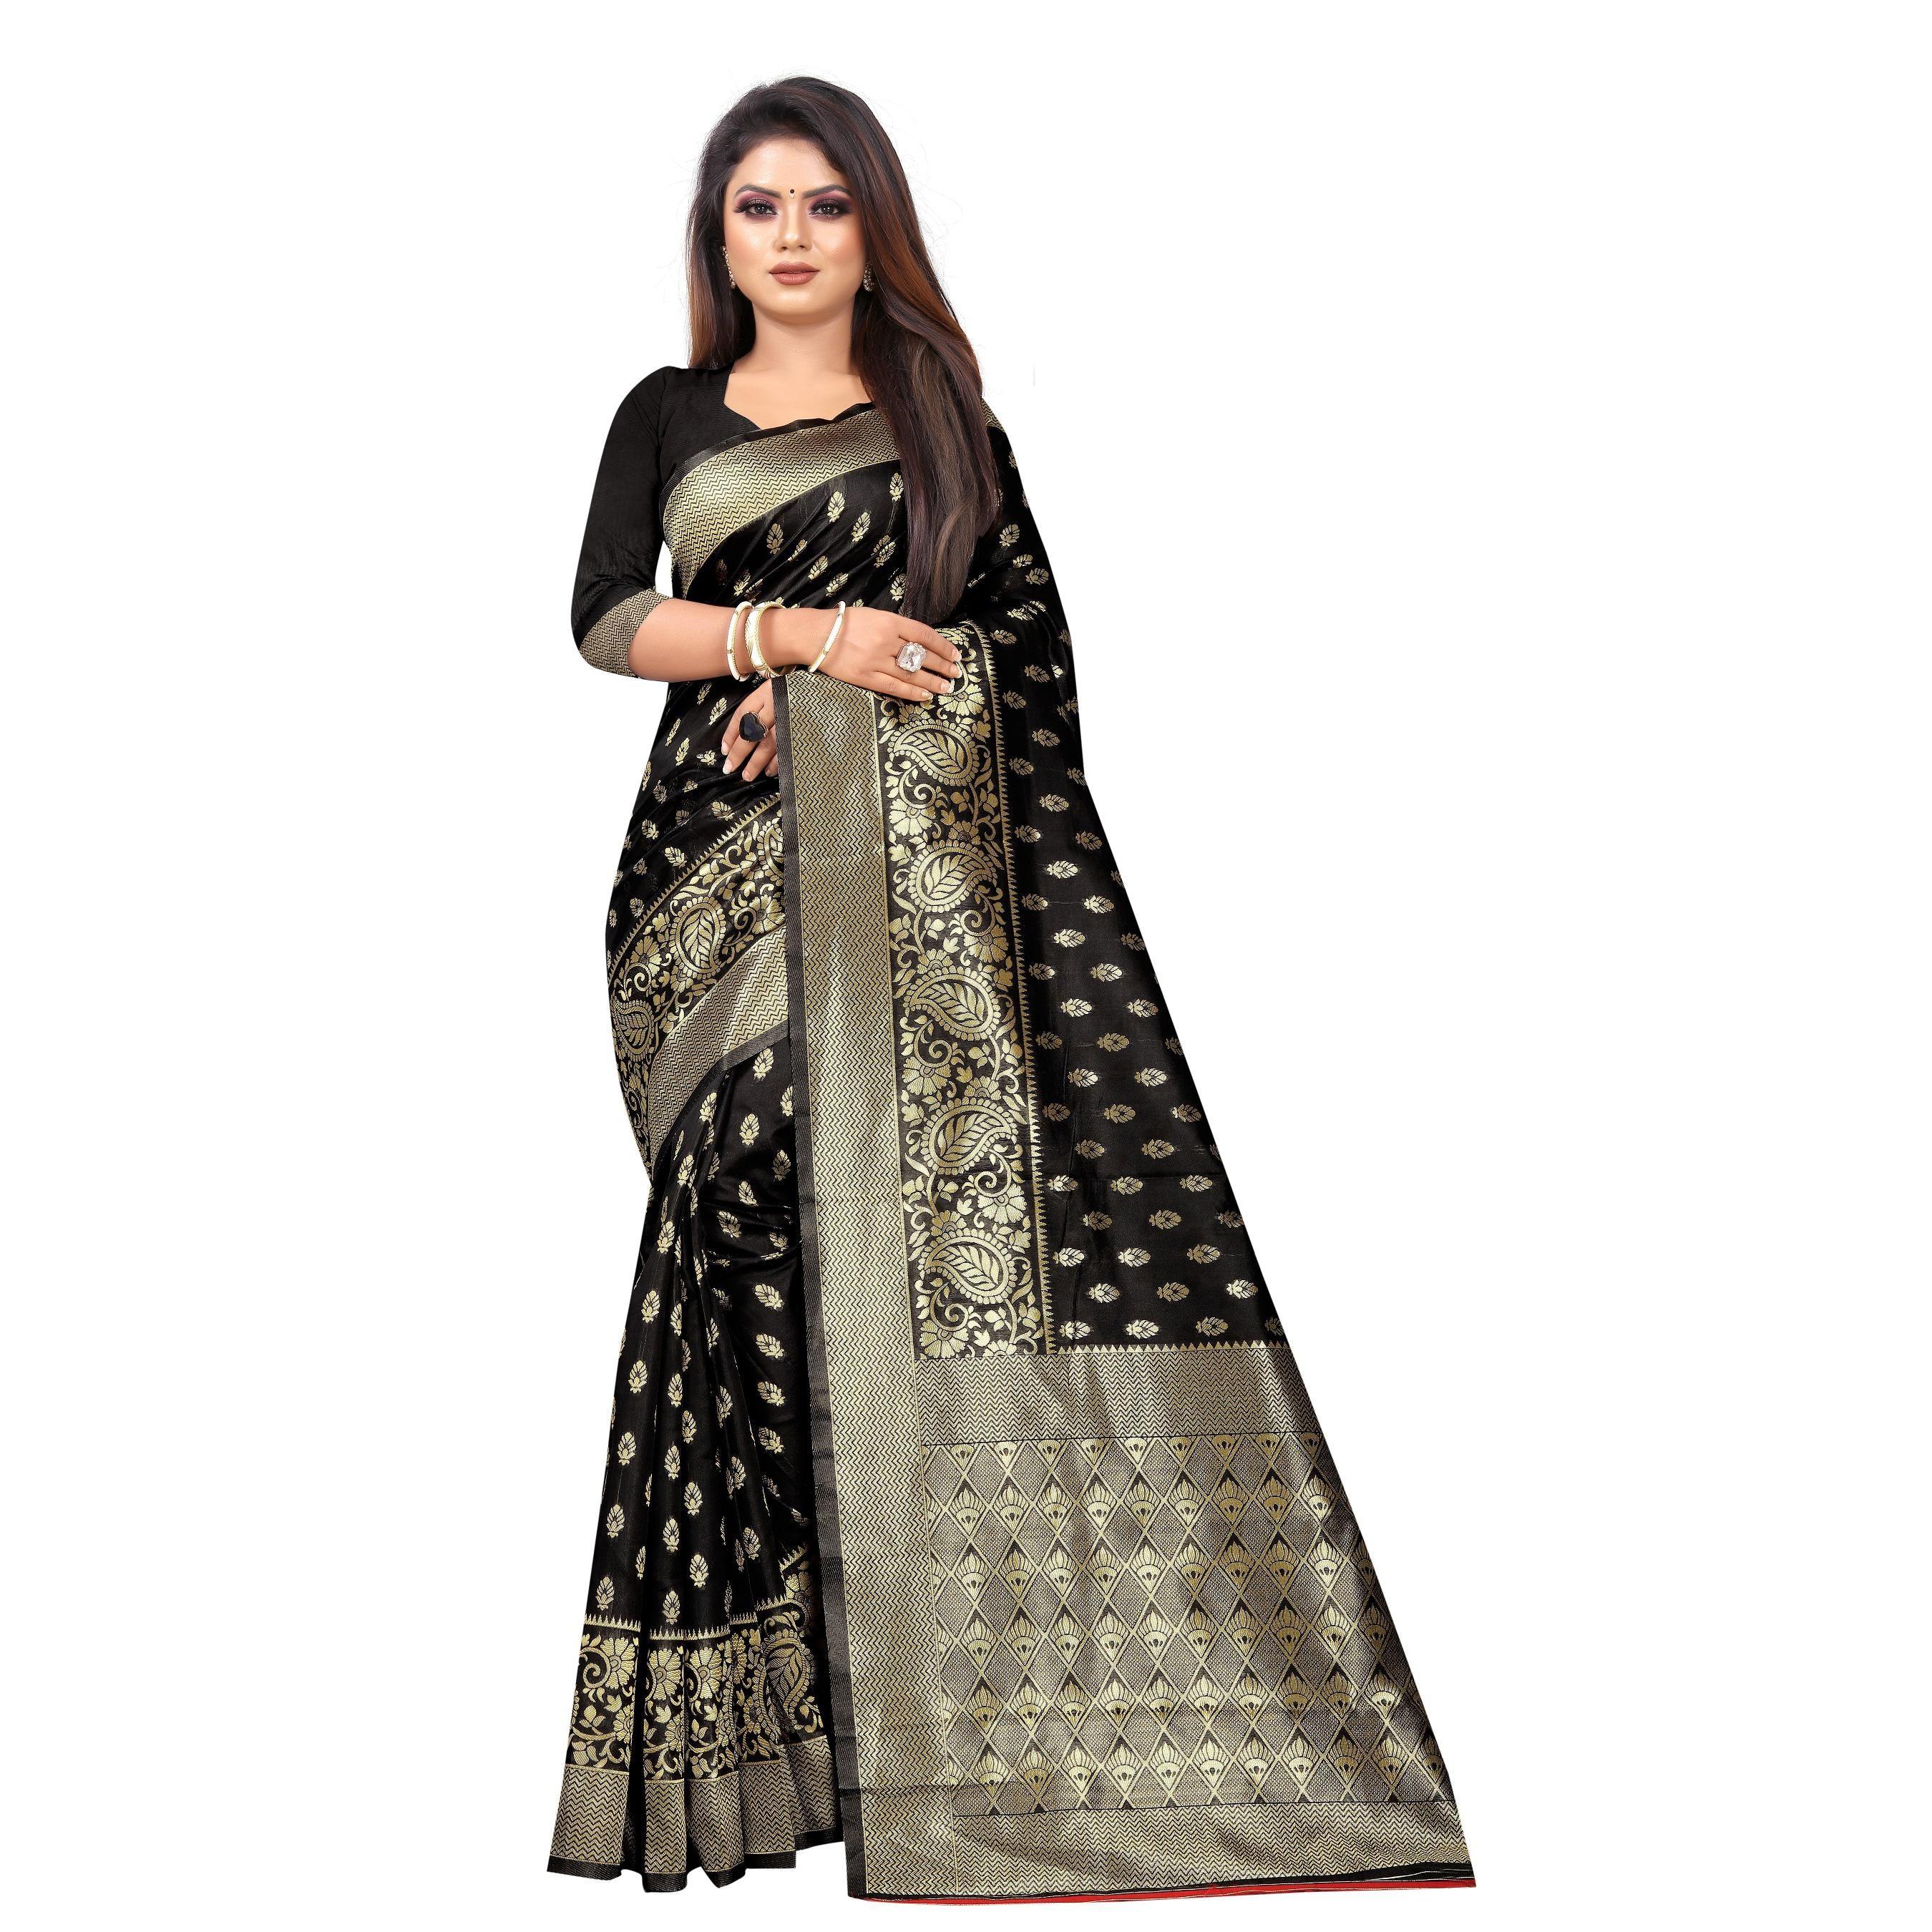 Intricate Black Colored Festive Wear Woven Lichi Silk Saree - Peachmode